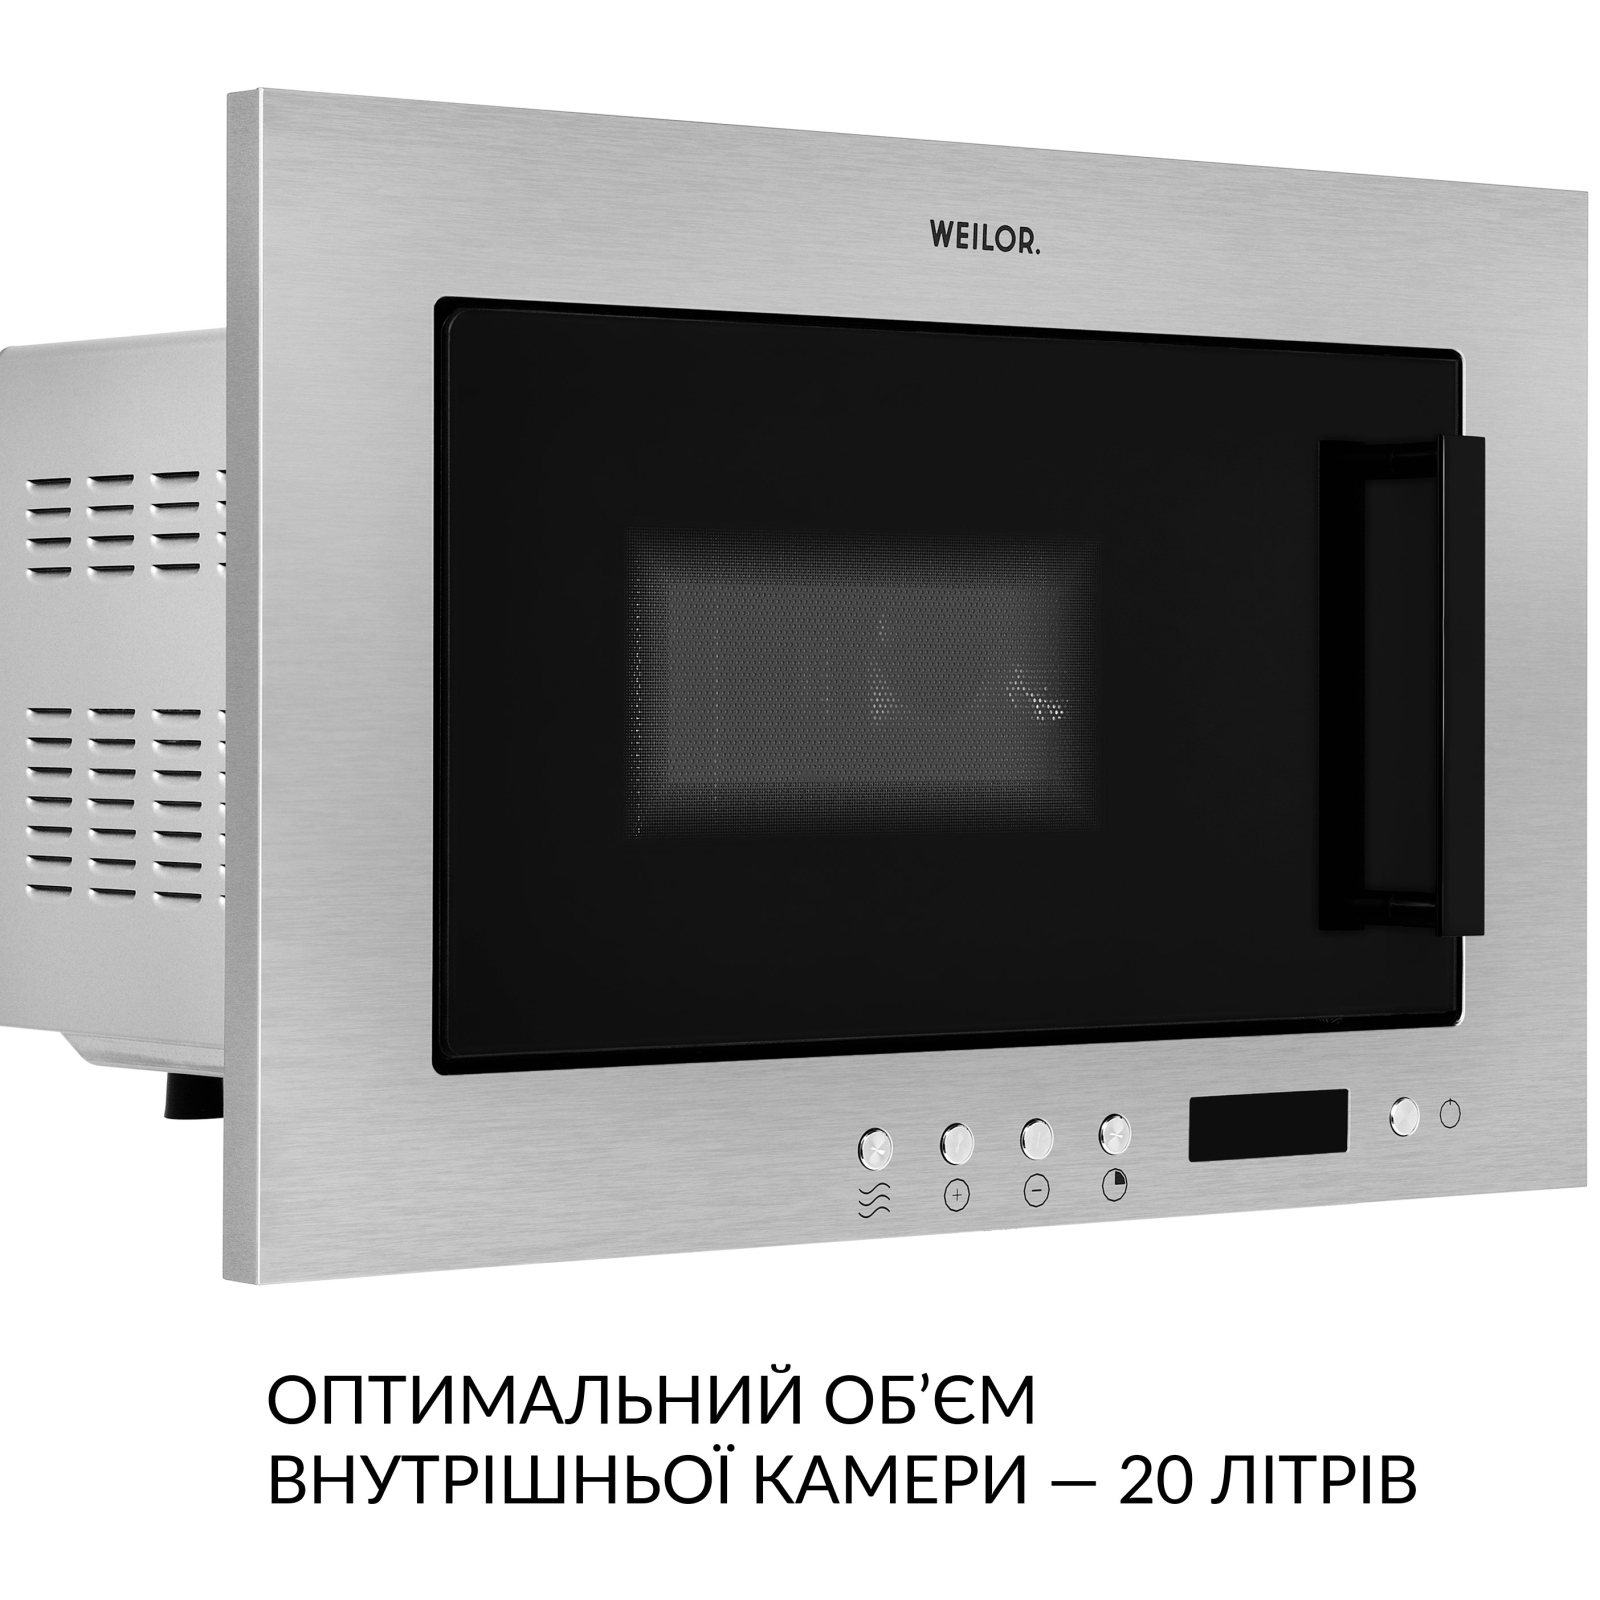 Микроволновая печь Weilor WBM 2041 GSS изображение 5